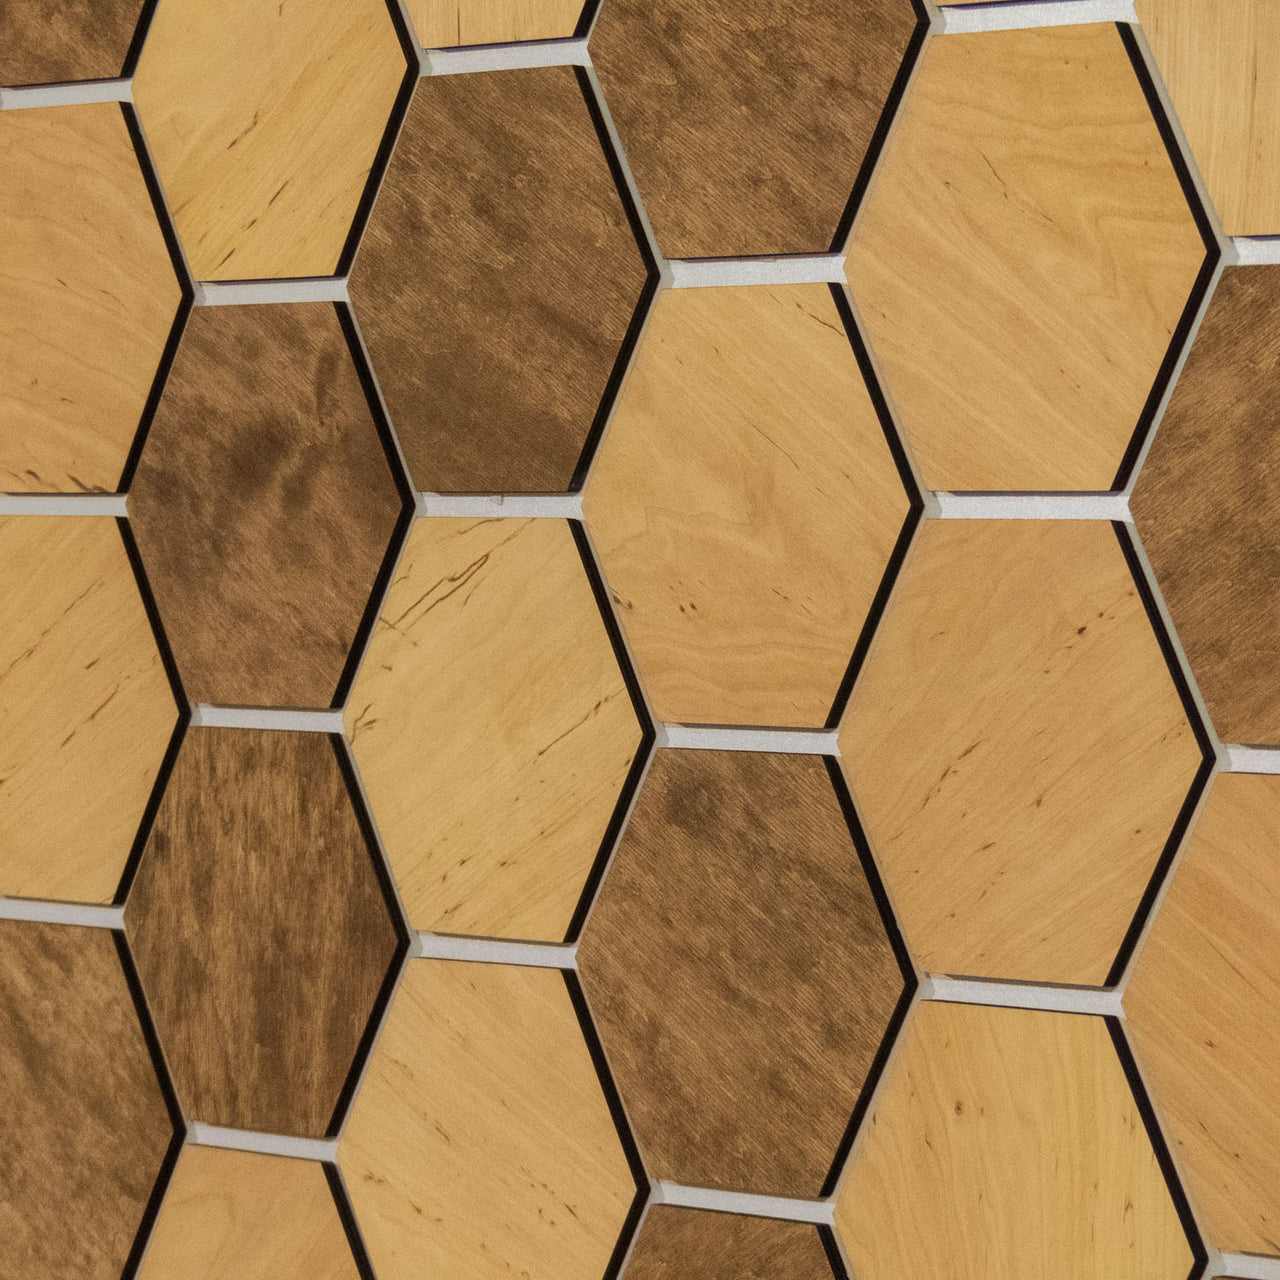 Hexagonal Wooden Wall Panels [32pcs] Alder Light